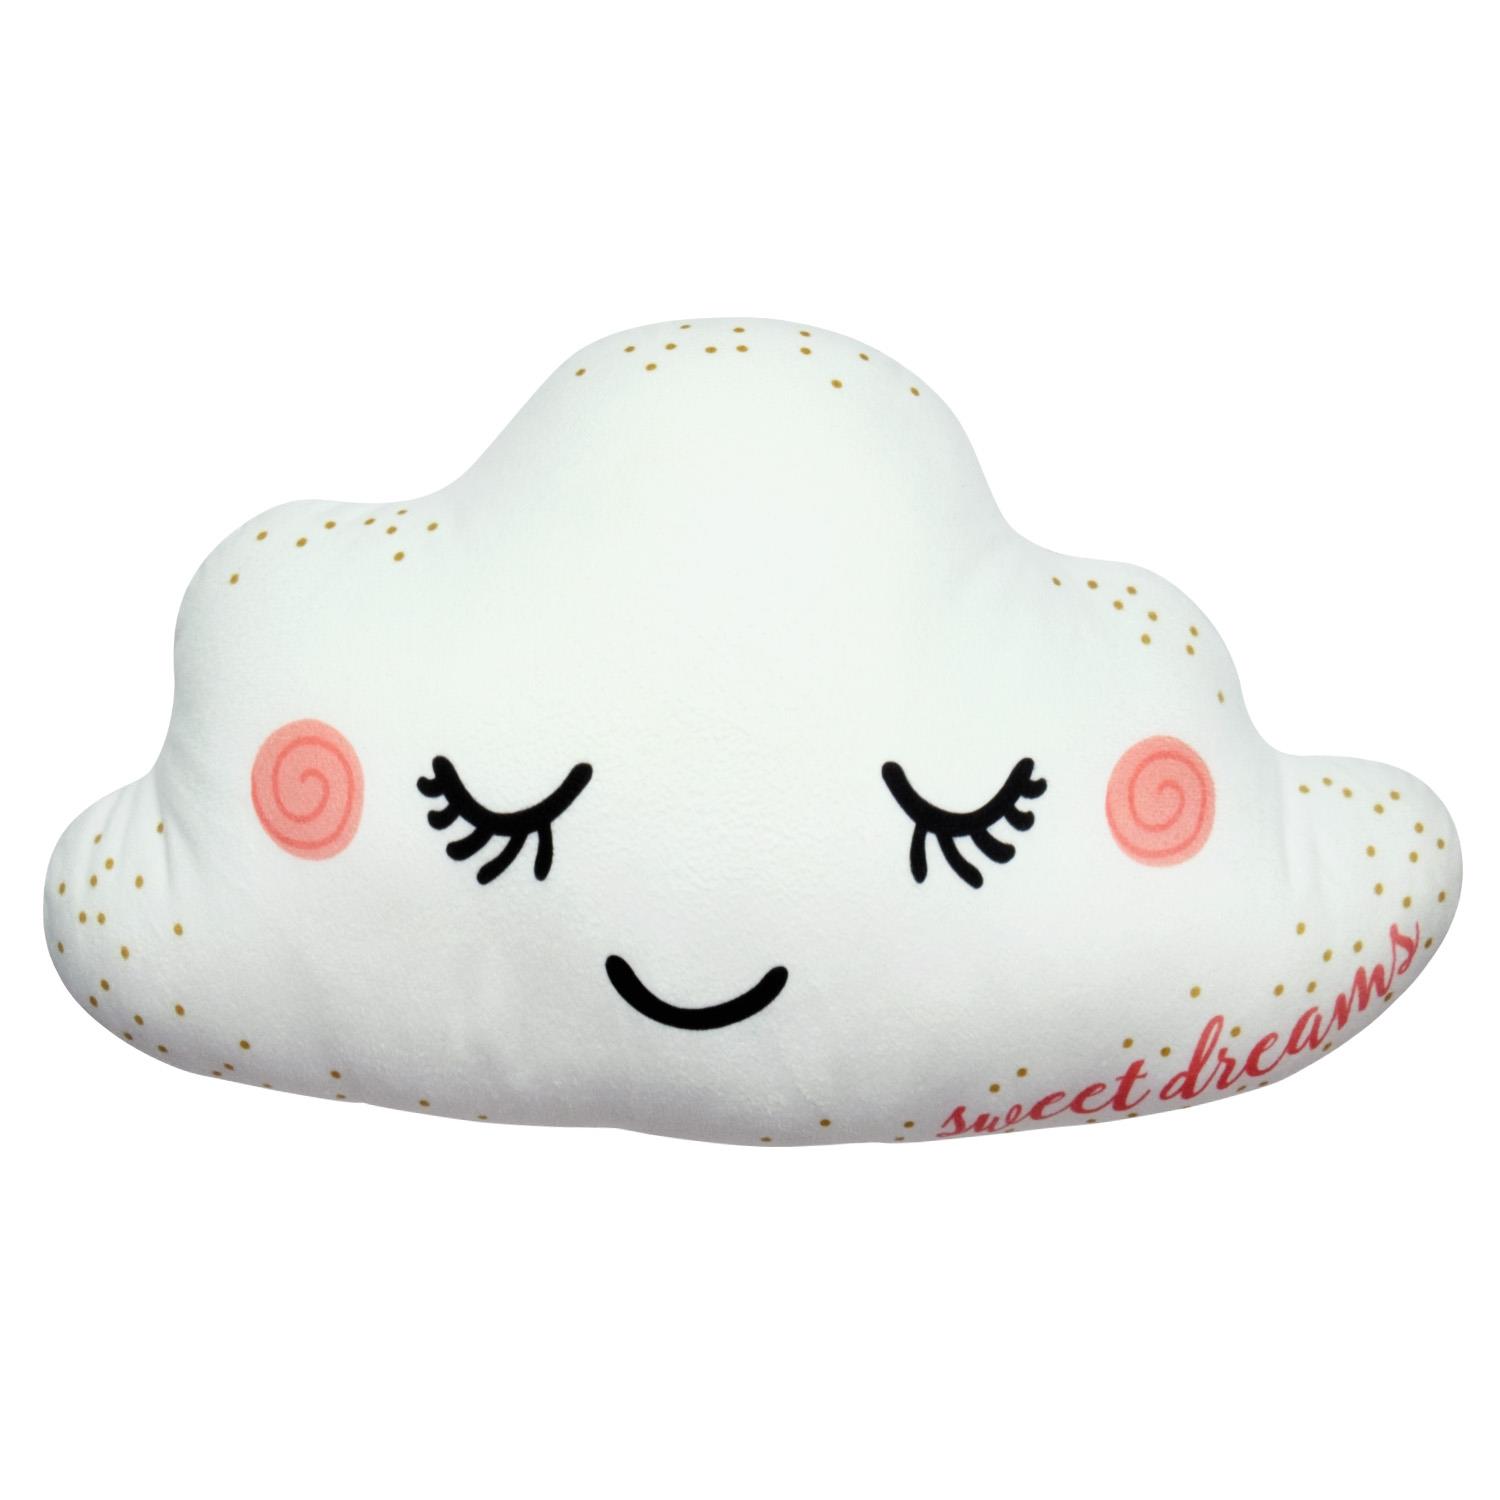 Figürliches Kissen »Wolke«